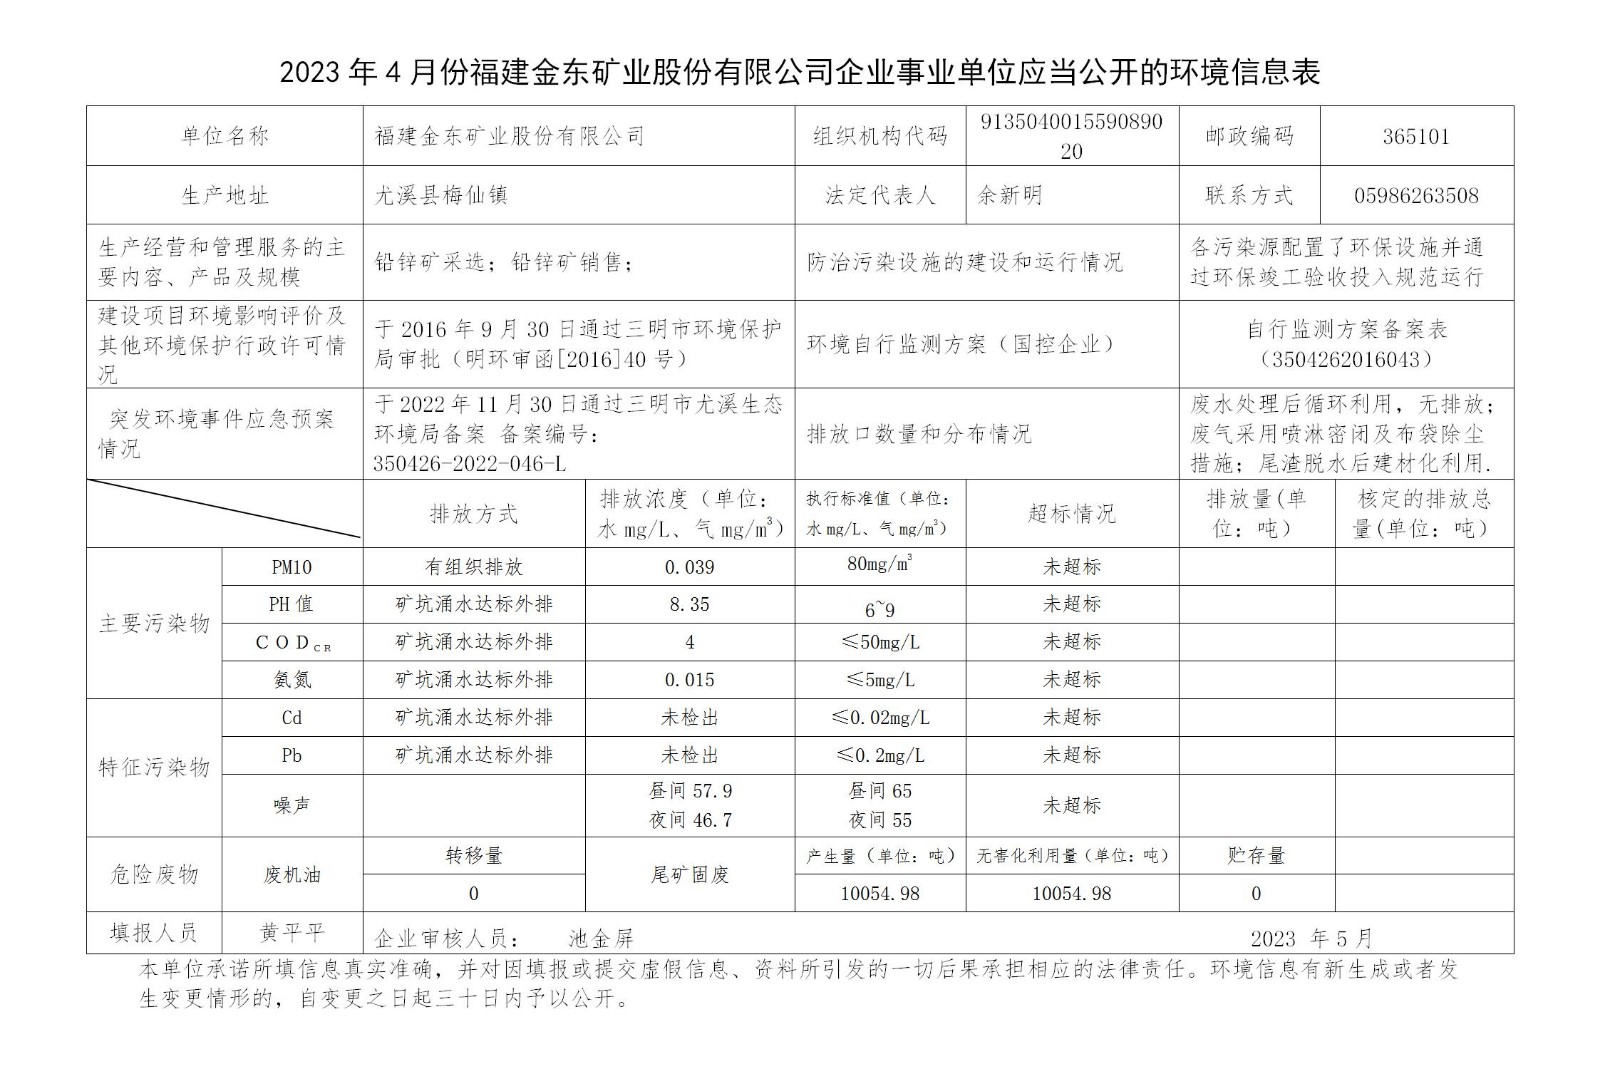 2023年4月份koko体育官方网站企业事业单位应当公开的环境信息表_01.jpg